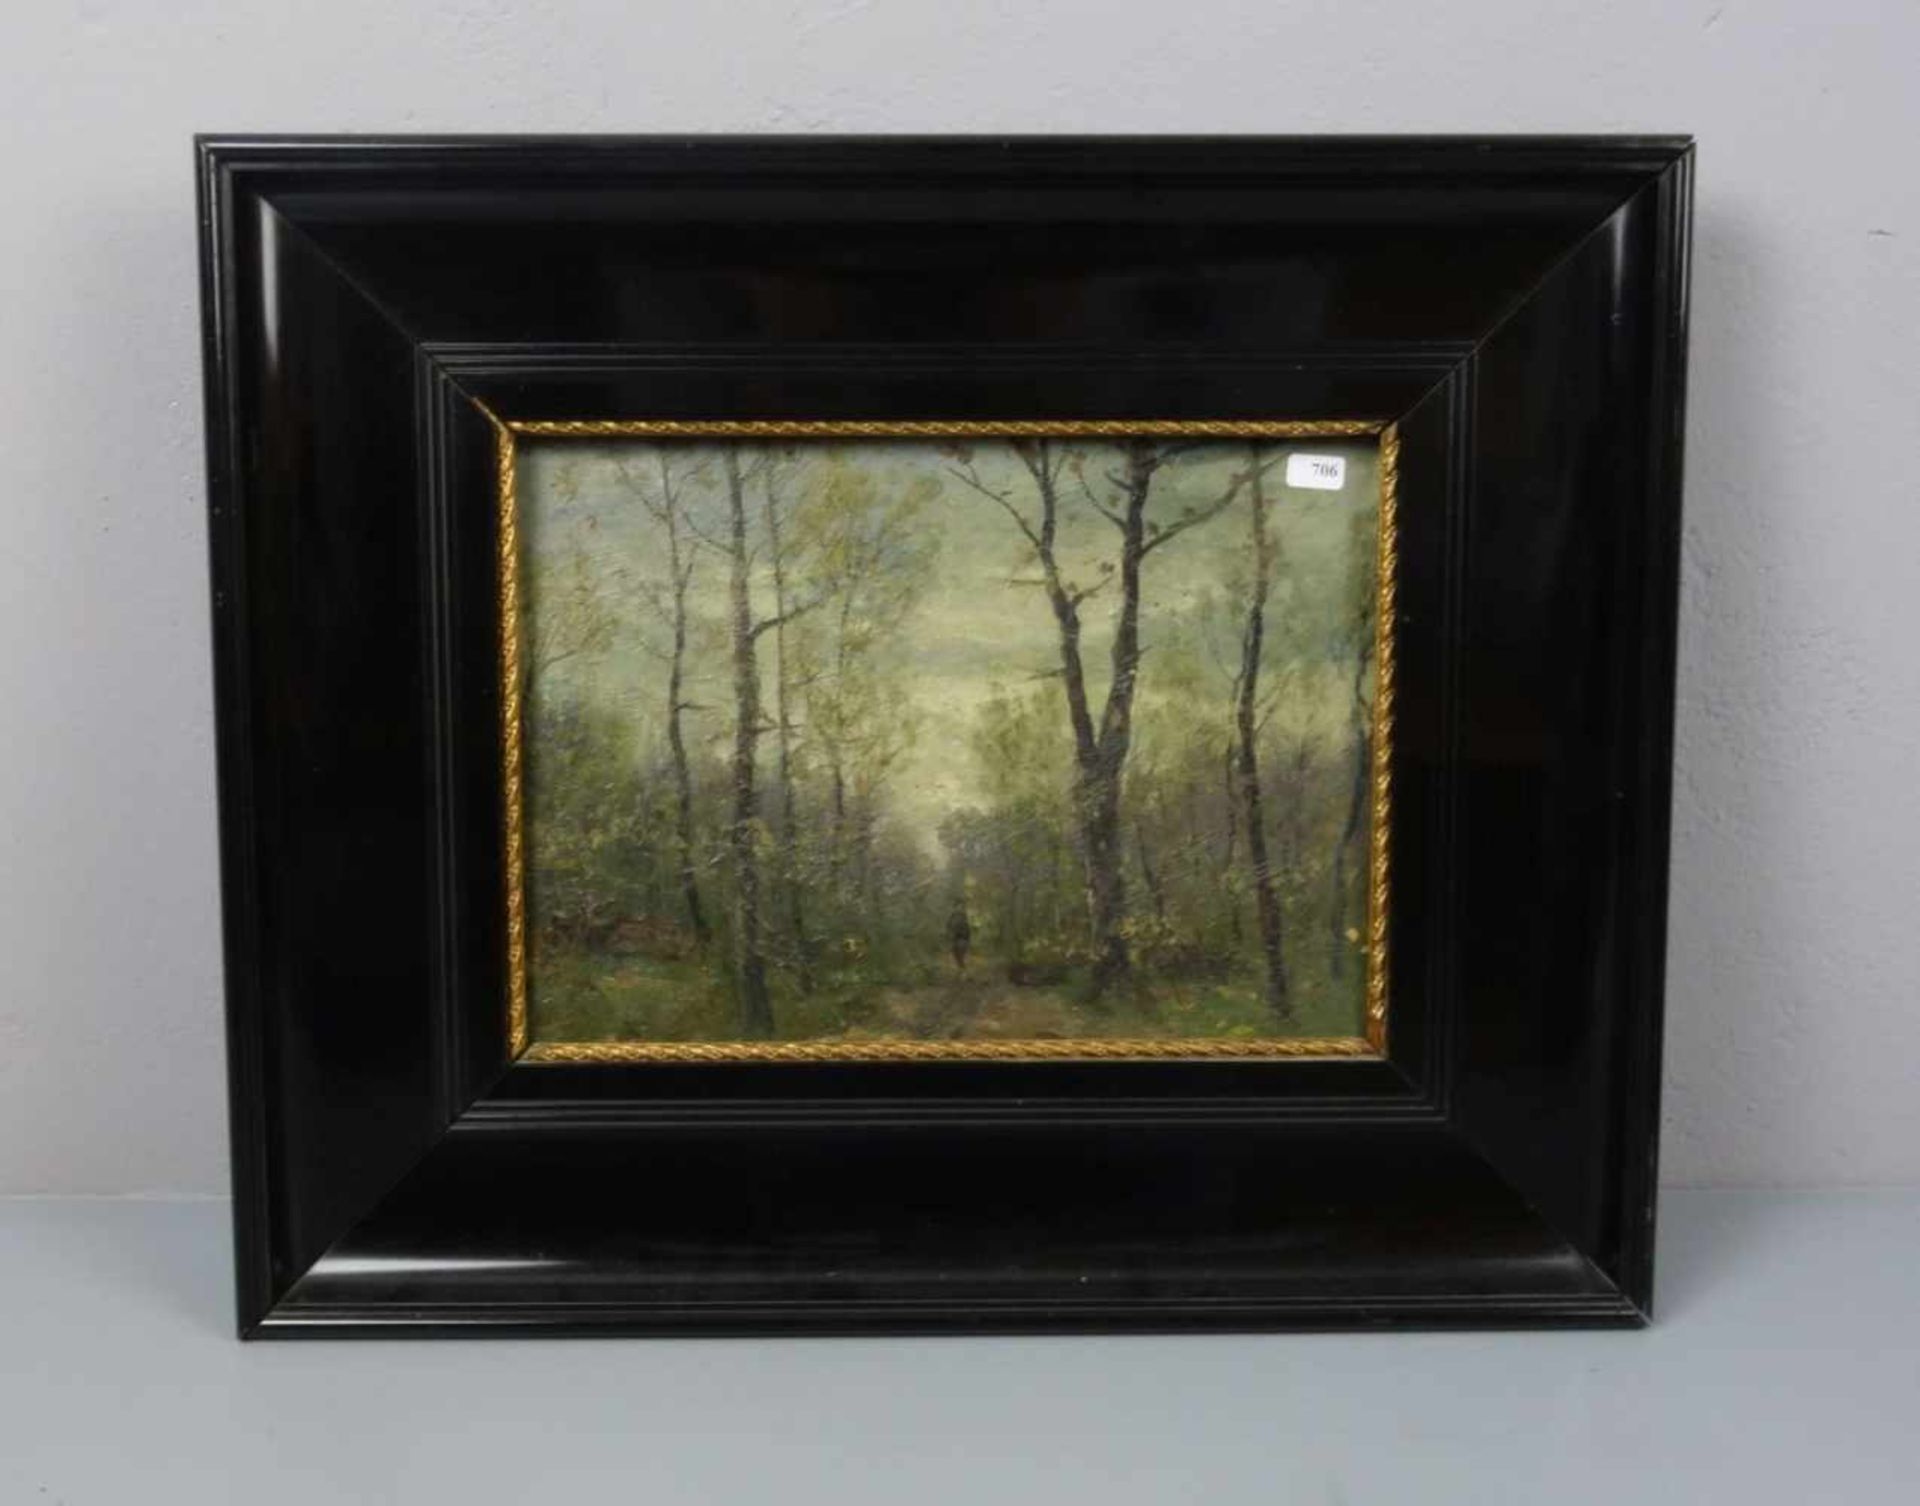 FEY, CARL OTTO (Düsseldorf 1894-1971 Altenkirchen), Gemälde / painting: "Waldstück mit Wanderer", Öl